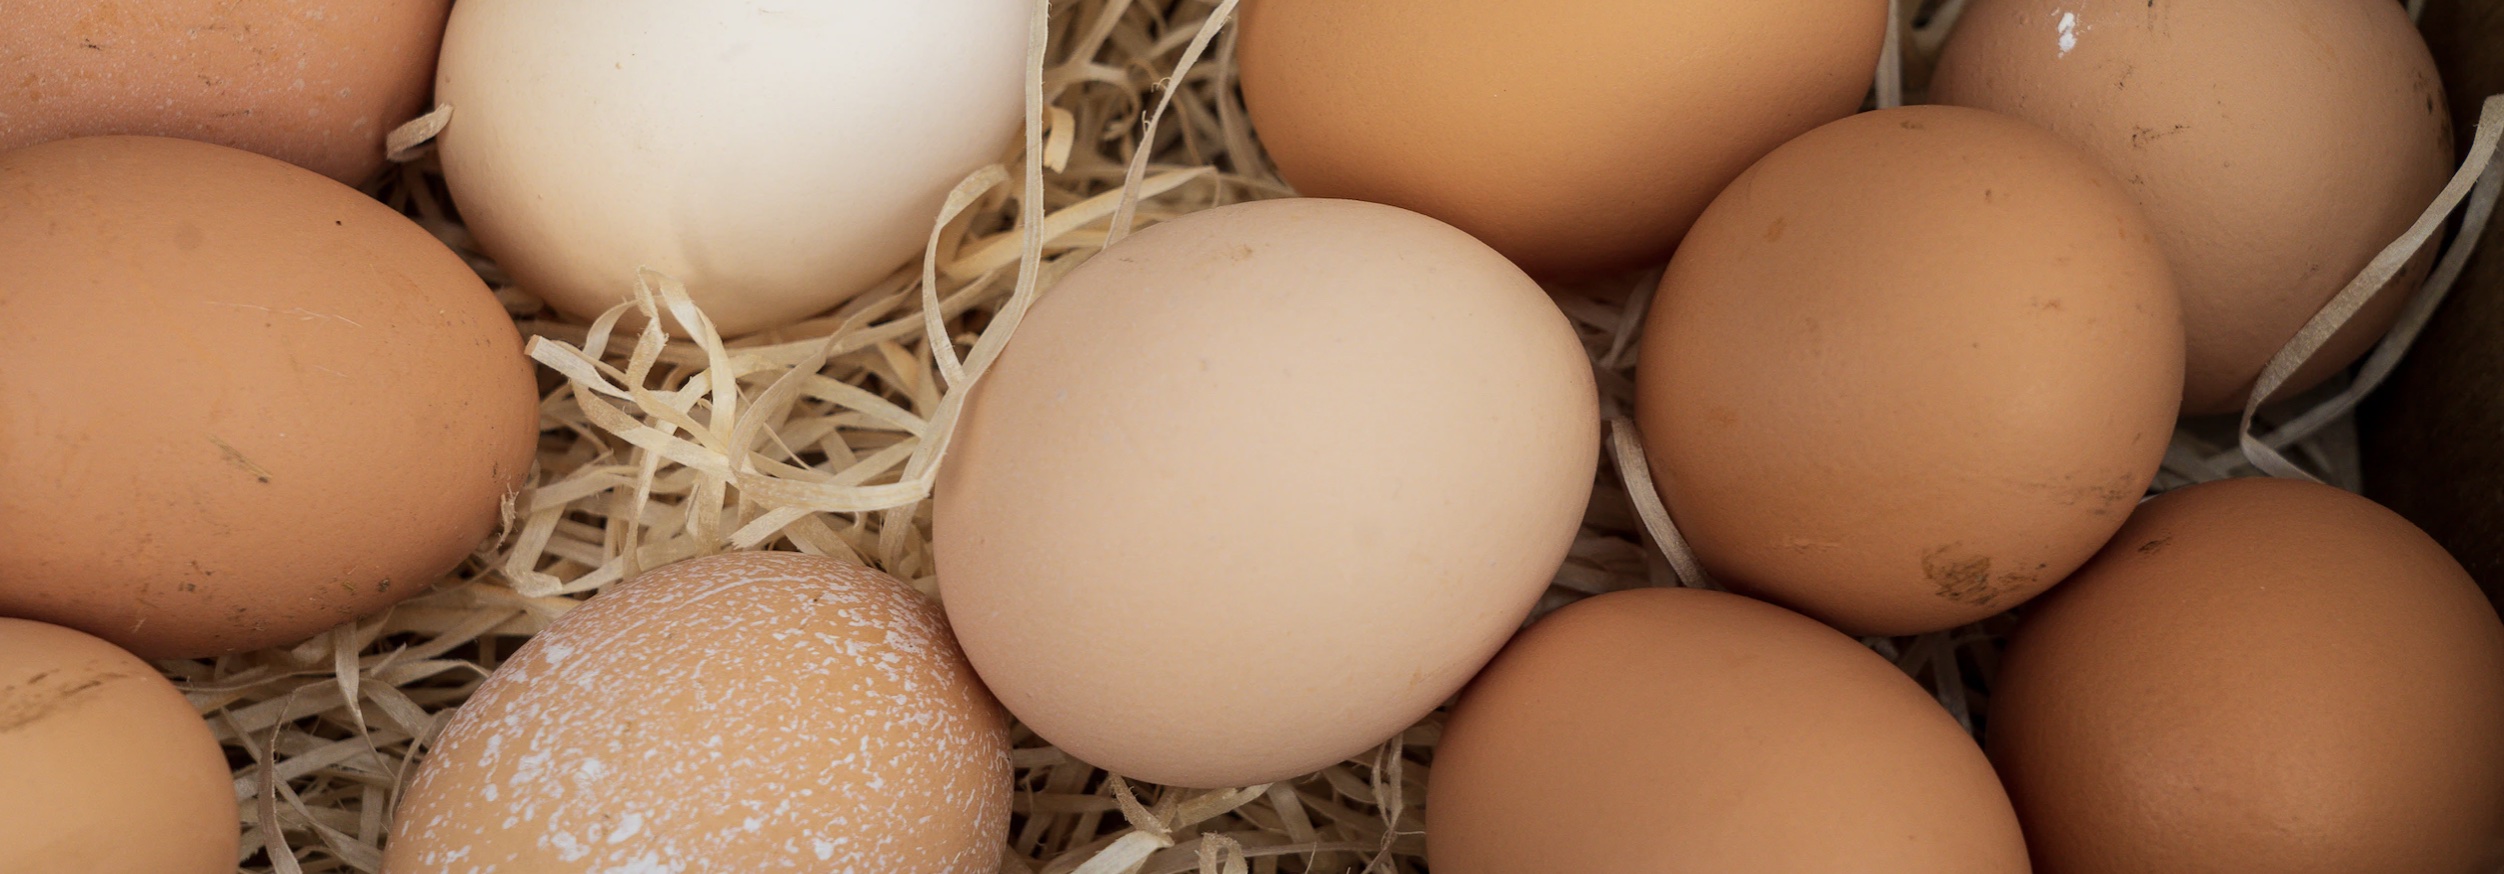 Птицефабрики назвали справедливую стоимость яиц